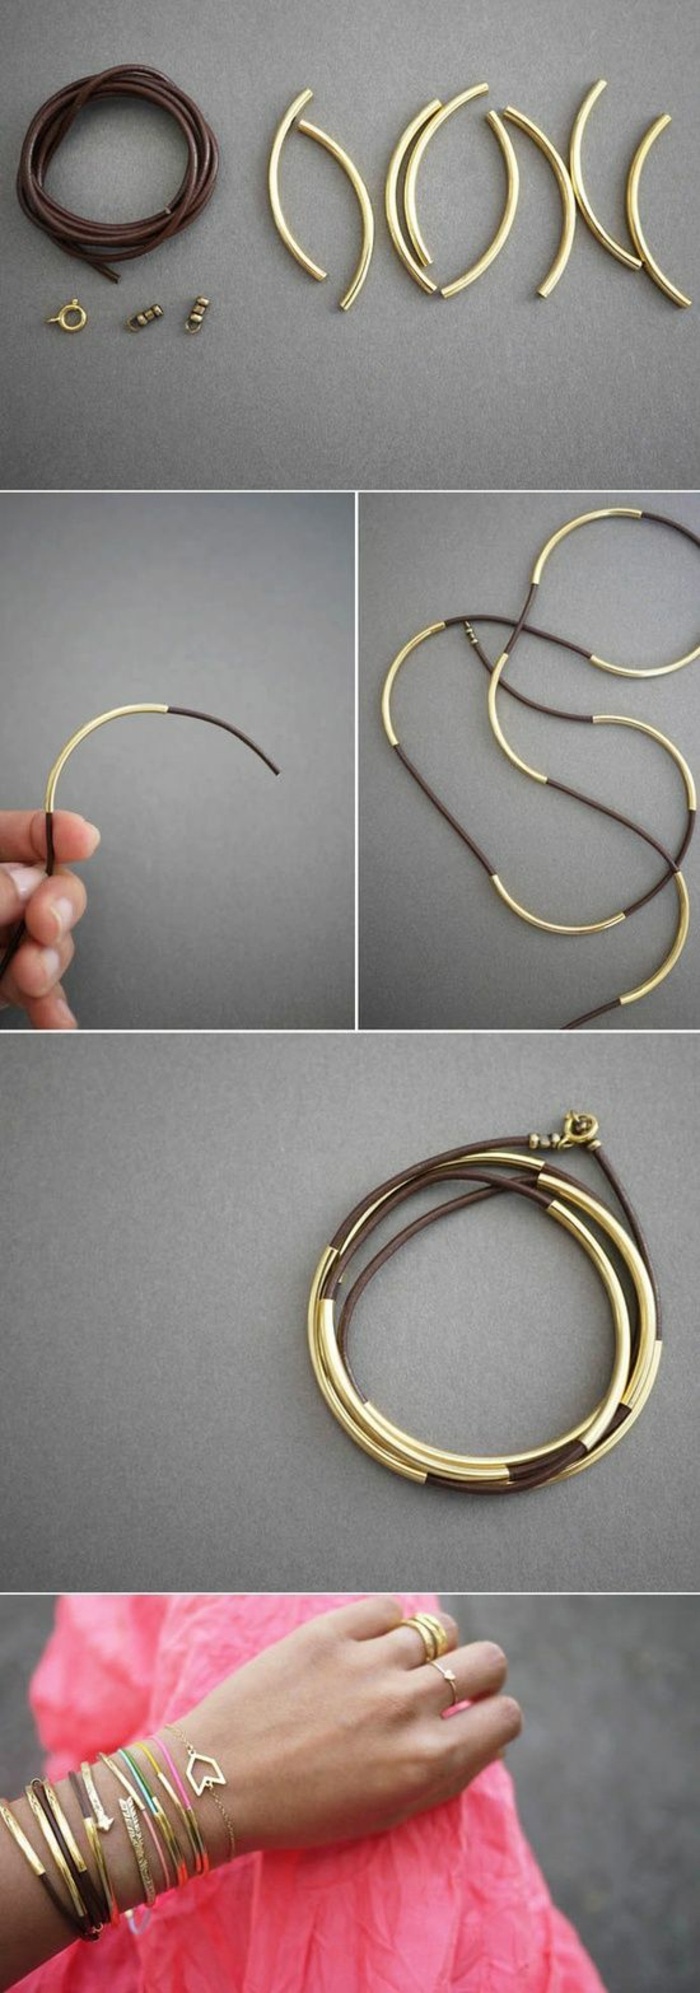 activité manuelle printemps, faire ses bijoux soi-même, tutoriel création bracelet bimatière, modèle de bracelet doré diy